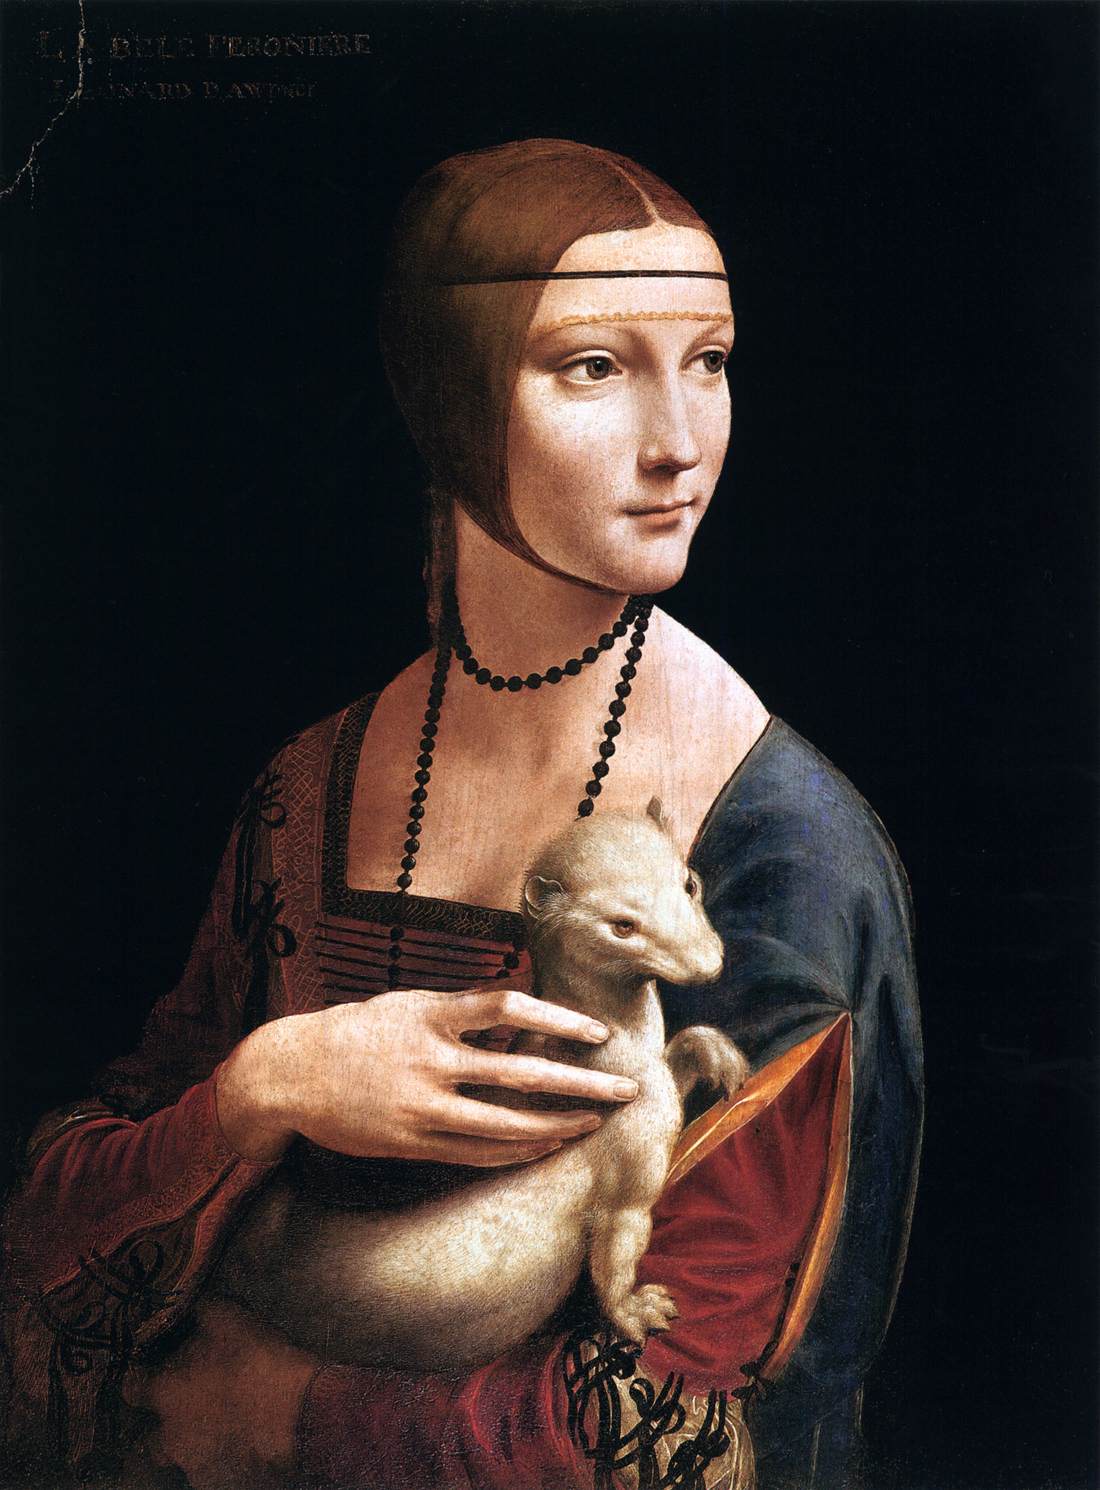 Leonardo da Vinci - The Lady with an Ermine, Cecilia Gallerani 1496